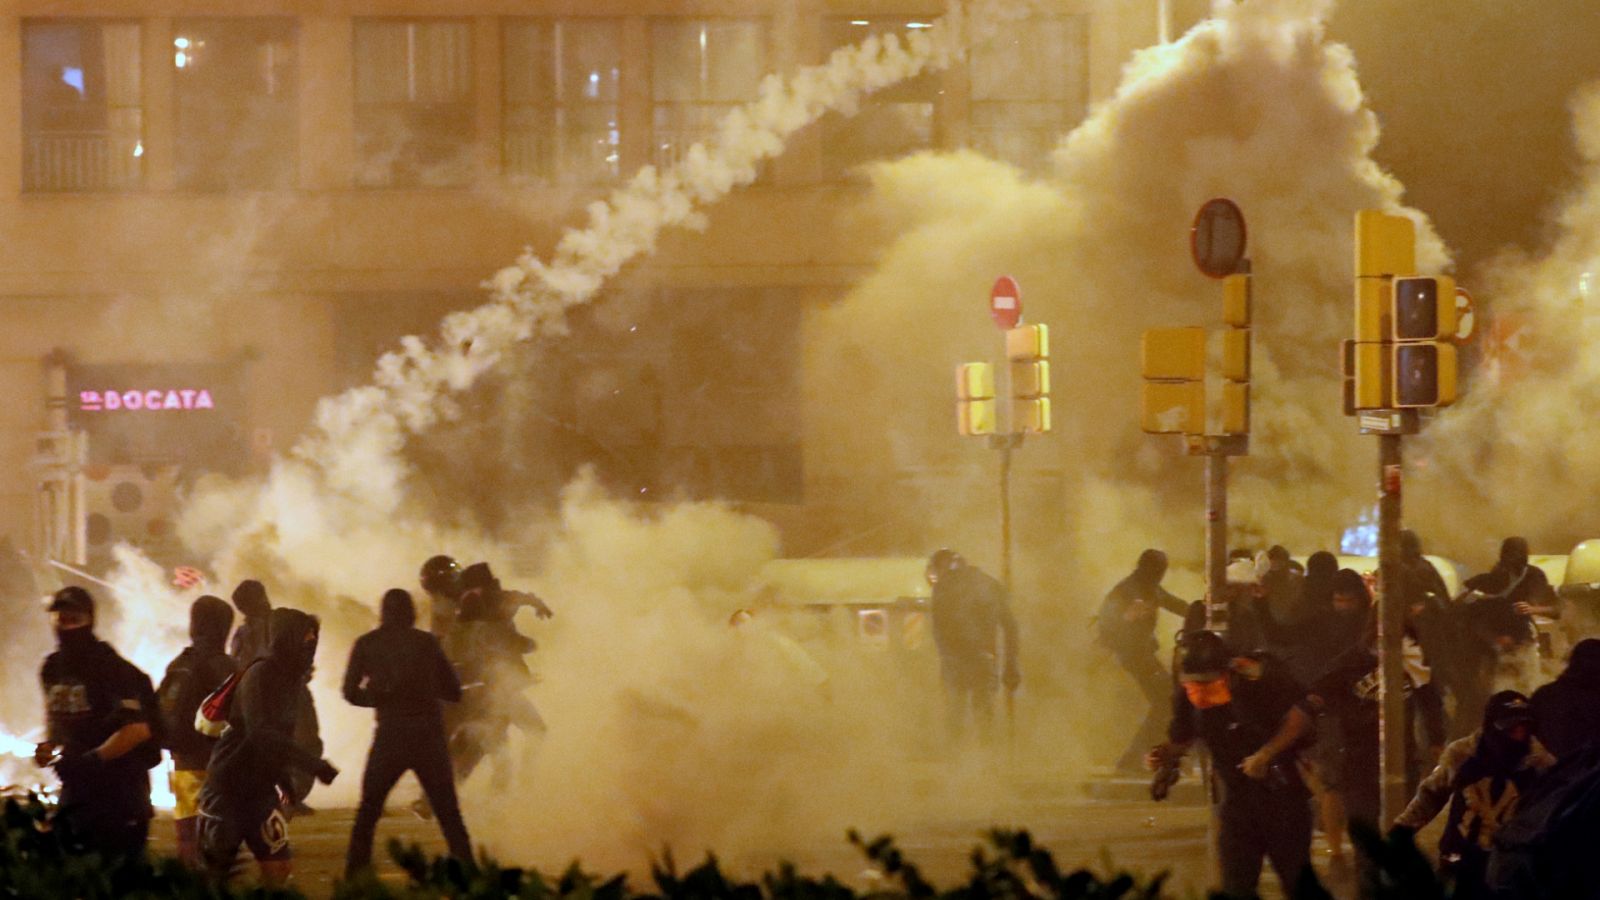 La noche en 24 horas - Especial disturbios en Cataluña - 18/10/19  - RTVE.es